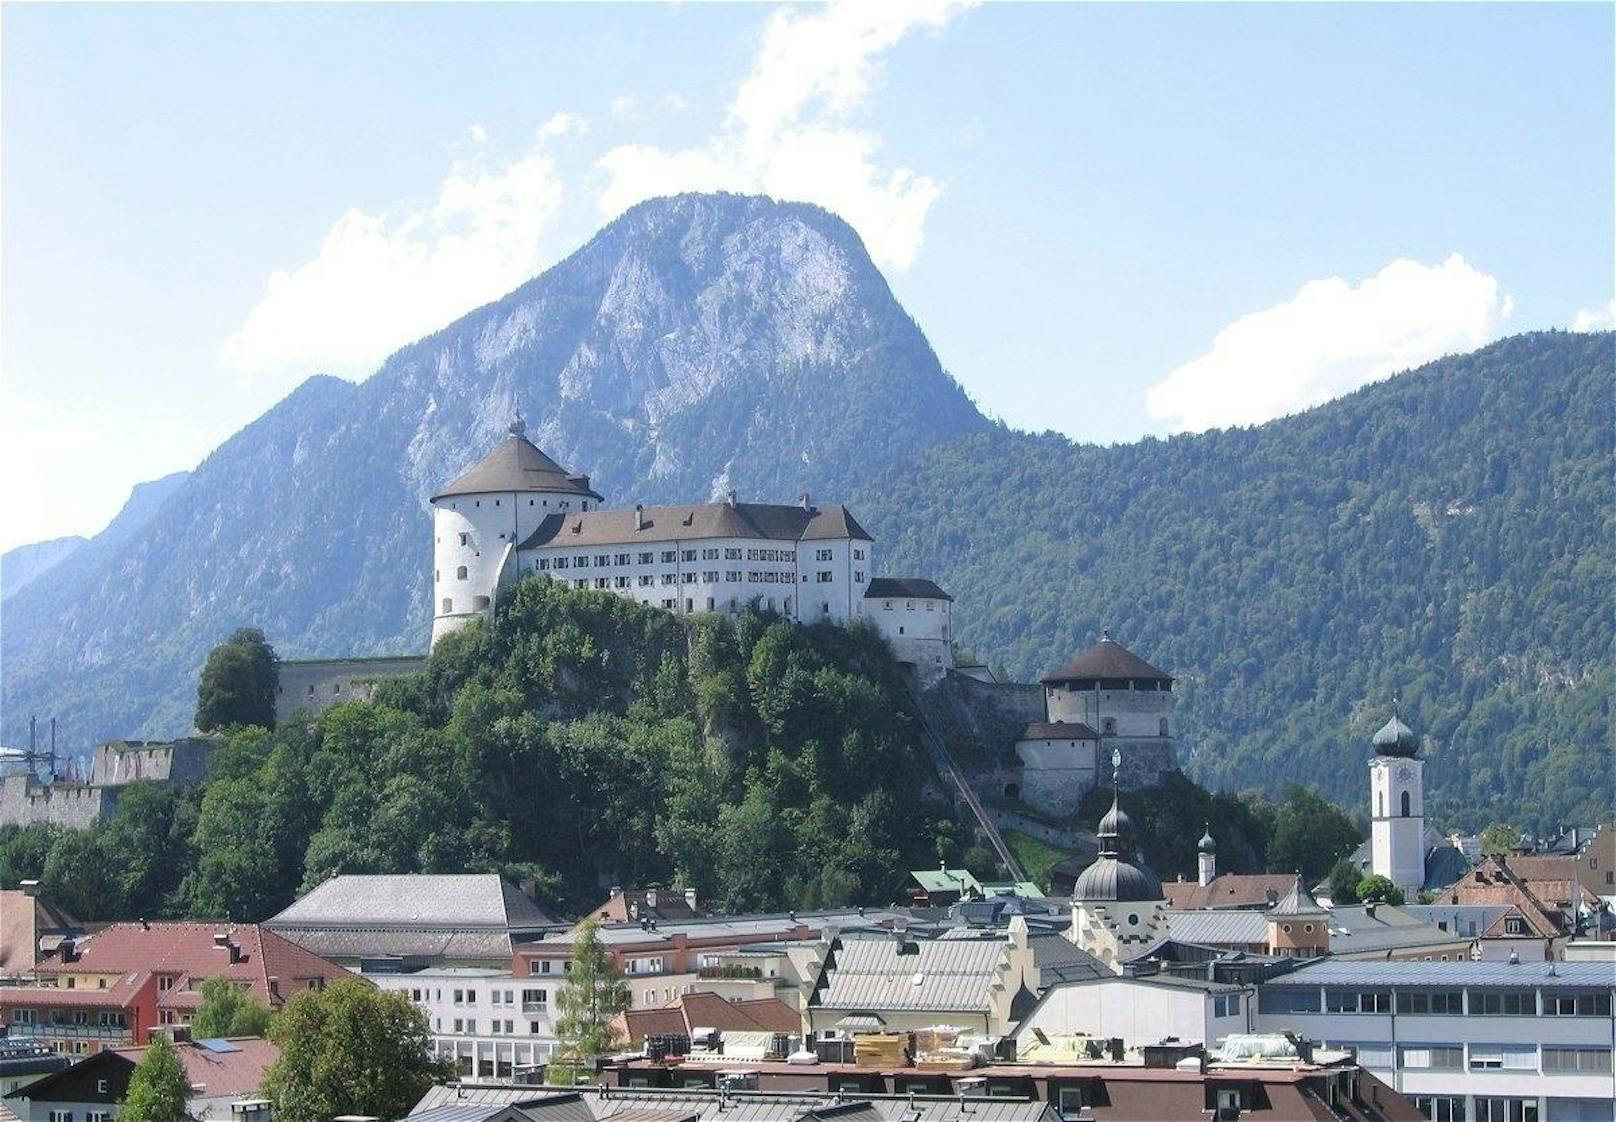 Vom "Elfenhain" Wandersteig hat man einen ähnlichen Blick auf die im Tal liegende Festung Kufstein.